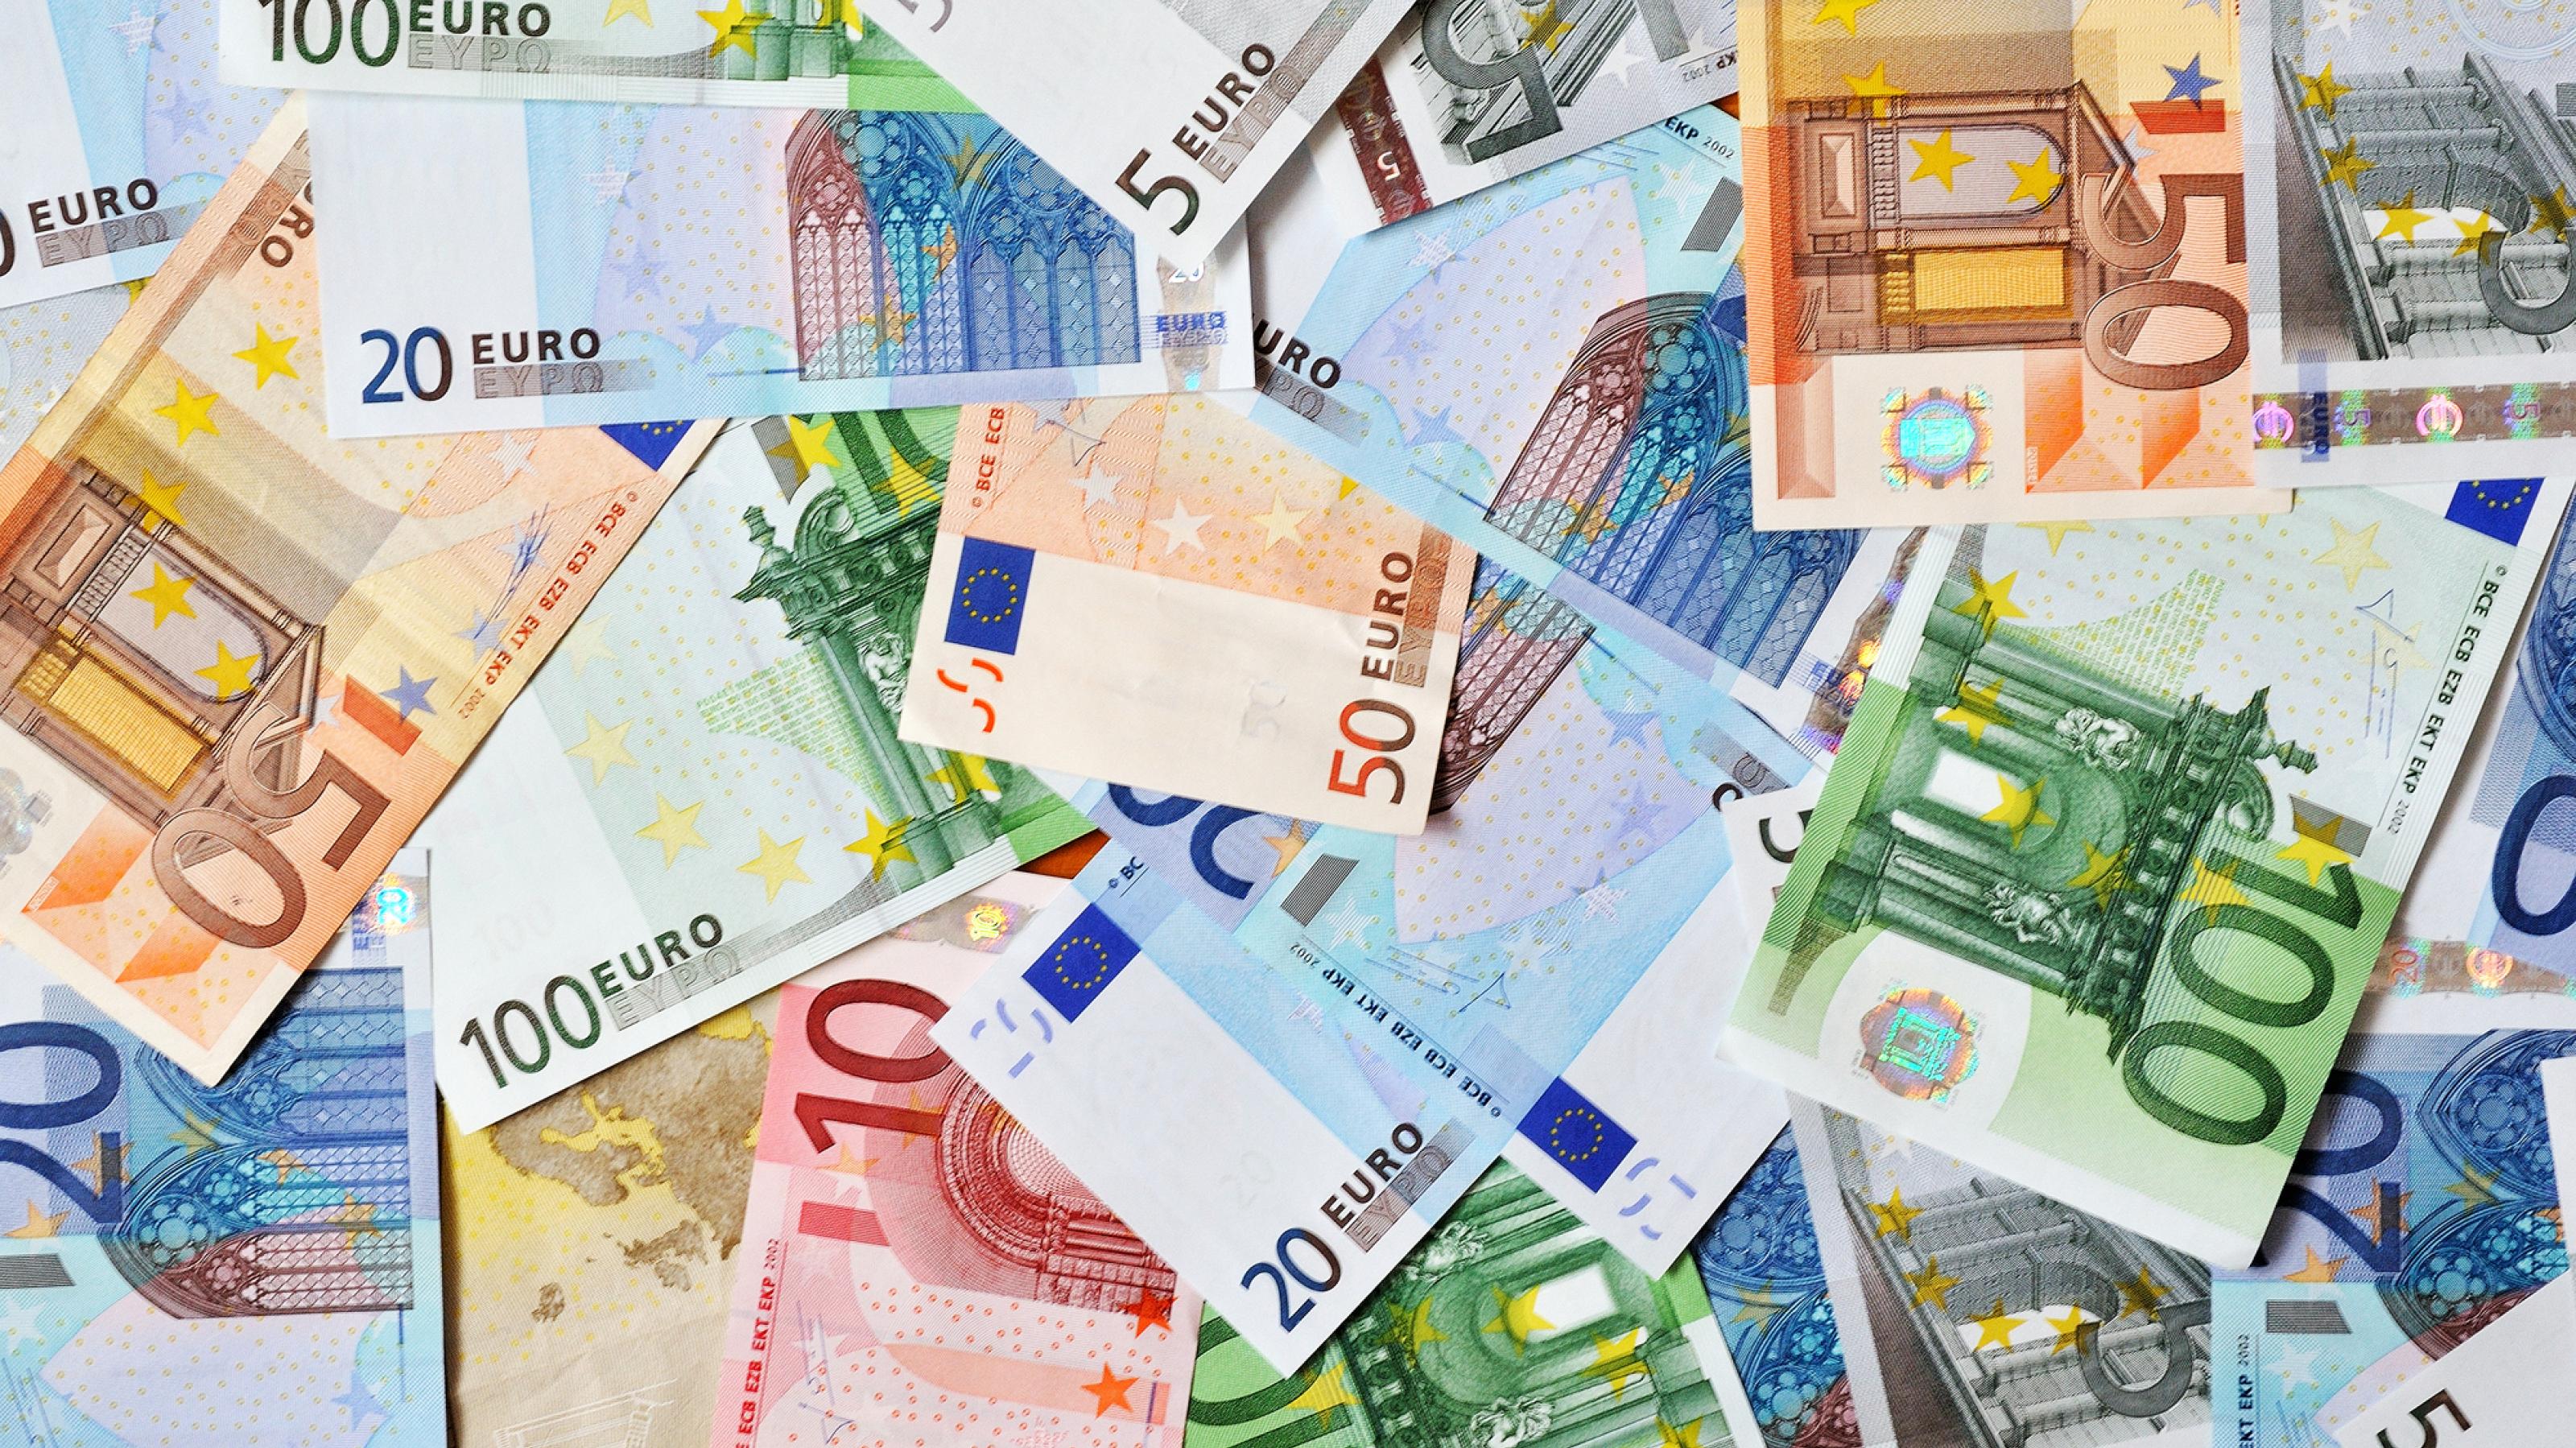 Eurogeldscheine verschiedener Werte auf dem Boden liegend.